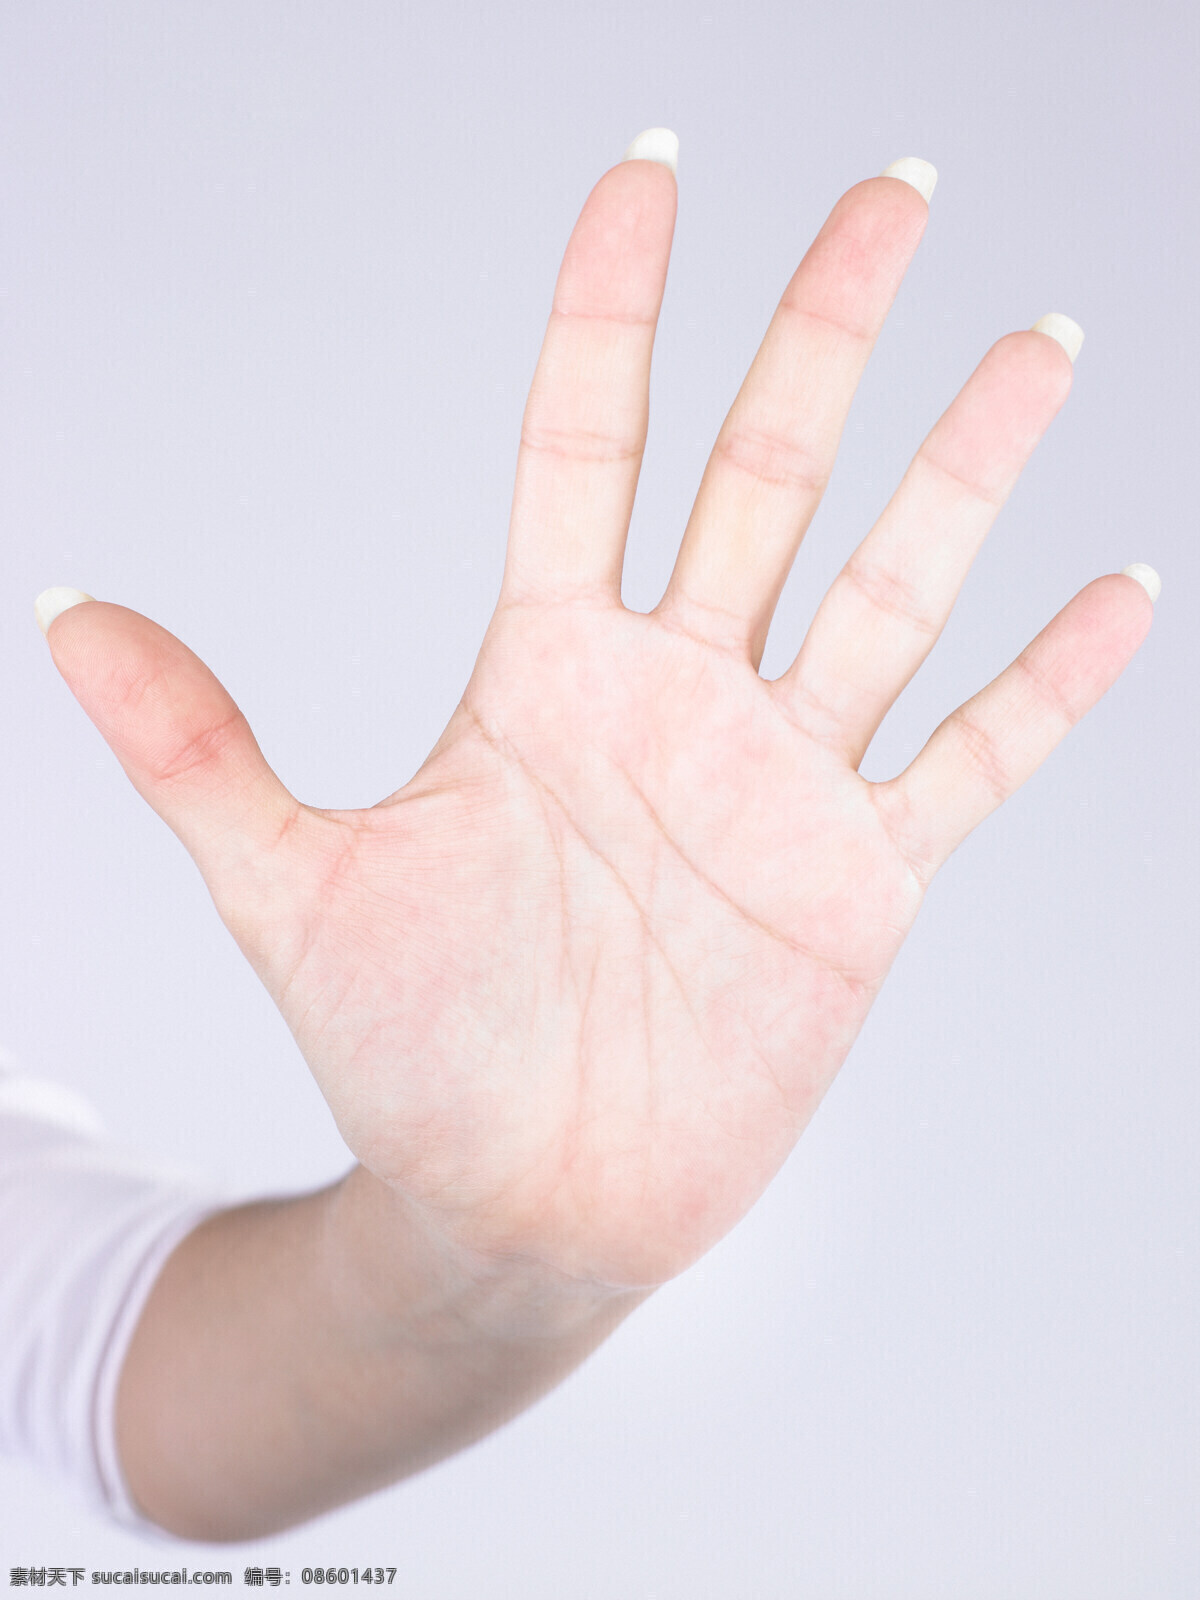 伸出 五指 手掌 手 手势 手指 人体器官图 人物图片